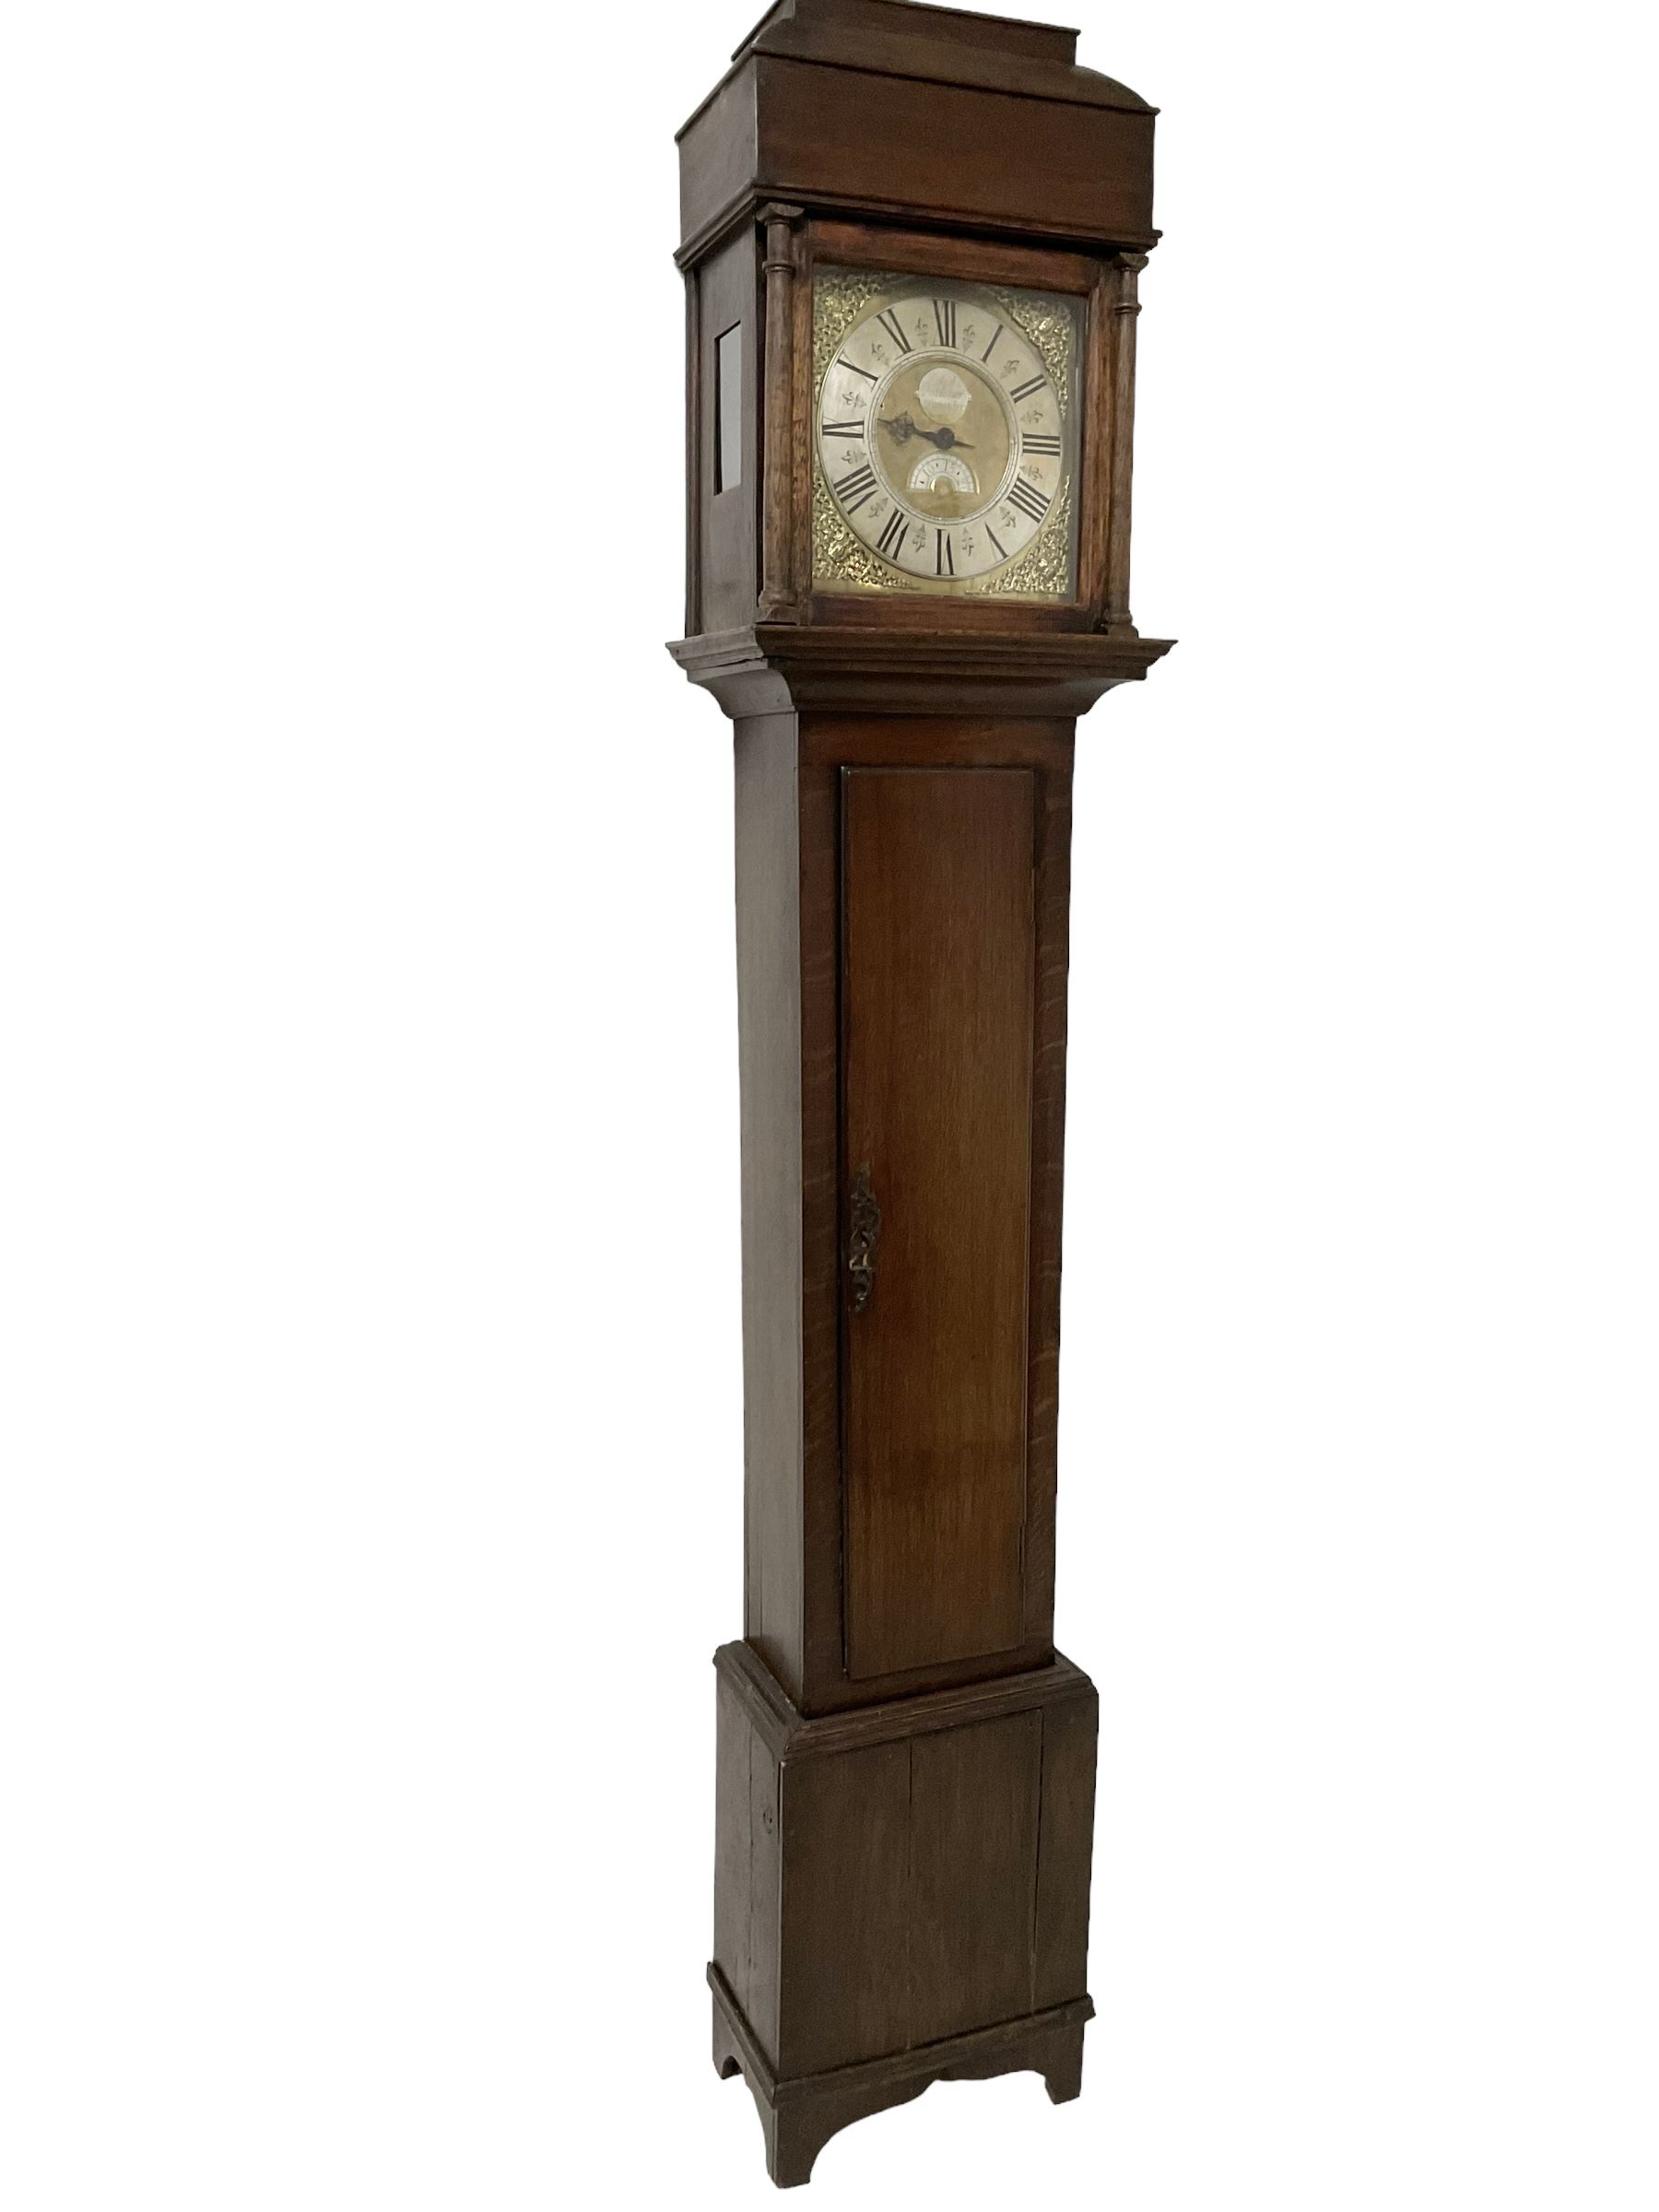 Robert Parkinson of Lancaster - an early George II oak cased 30 hr longcase clock